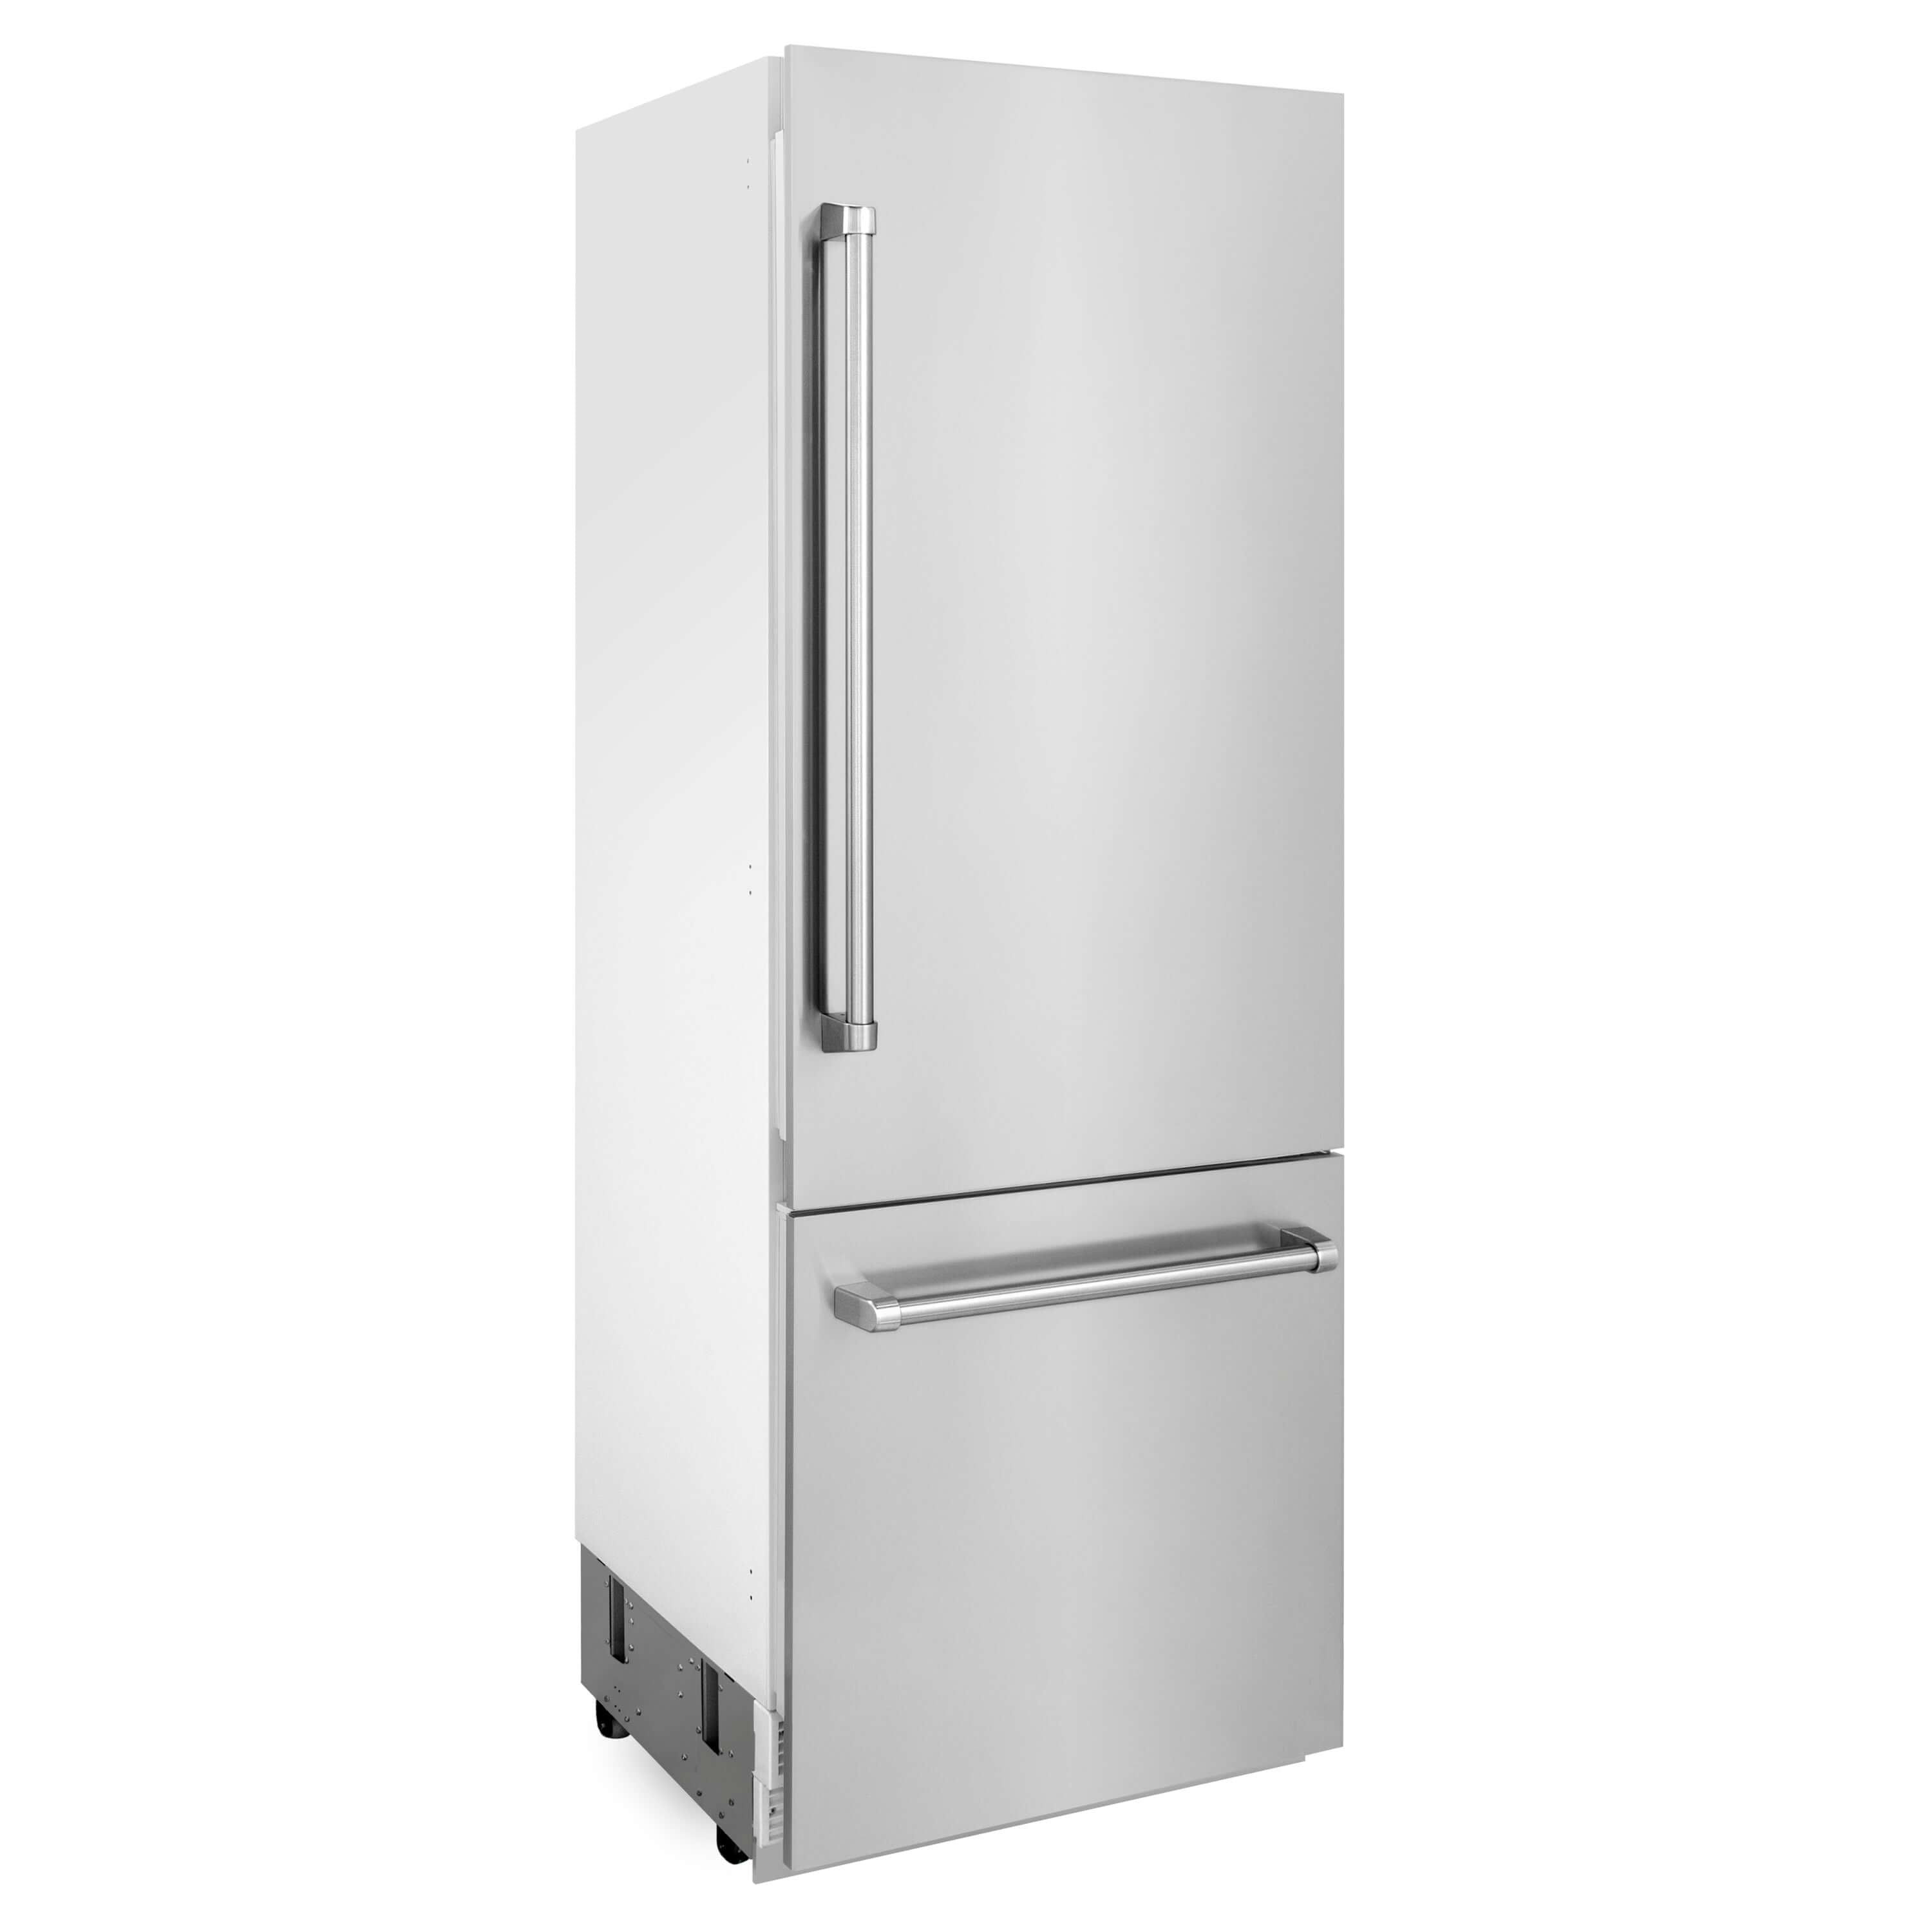 ZLINE 30" Built-in Refrigerator side.